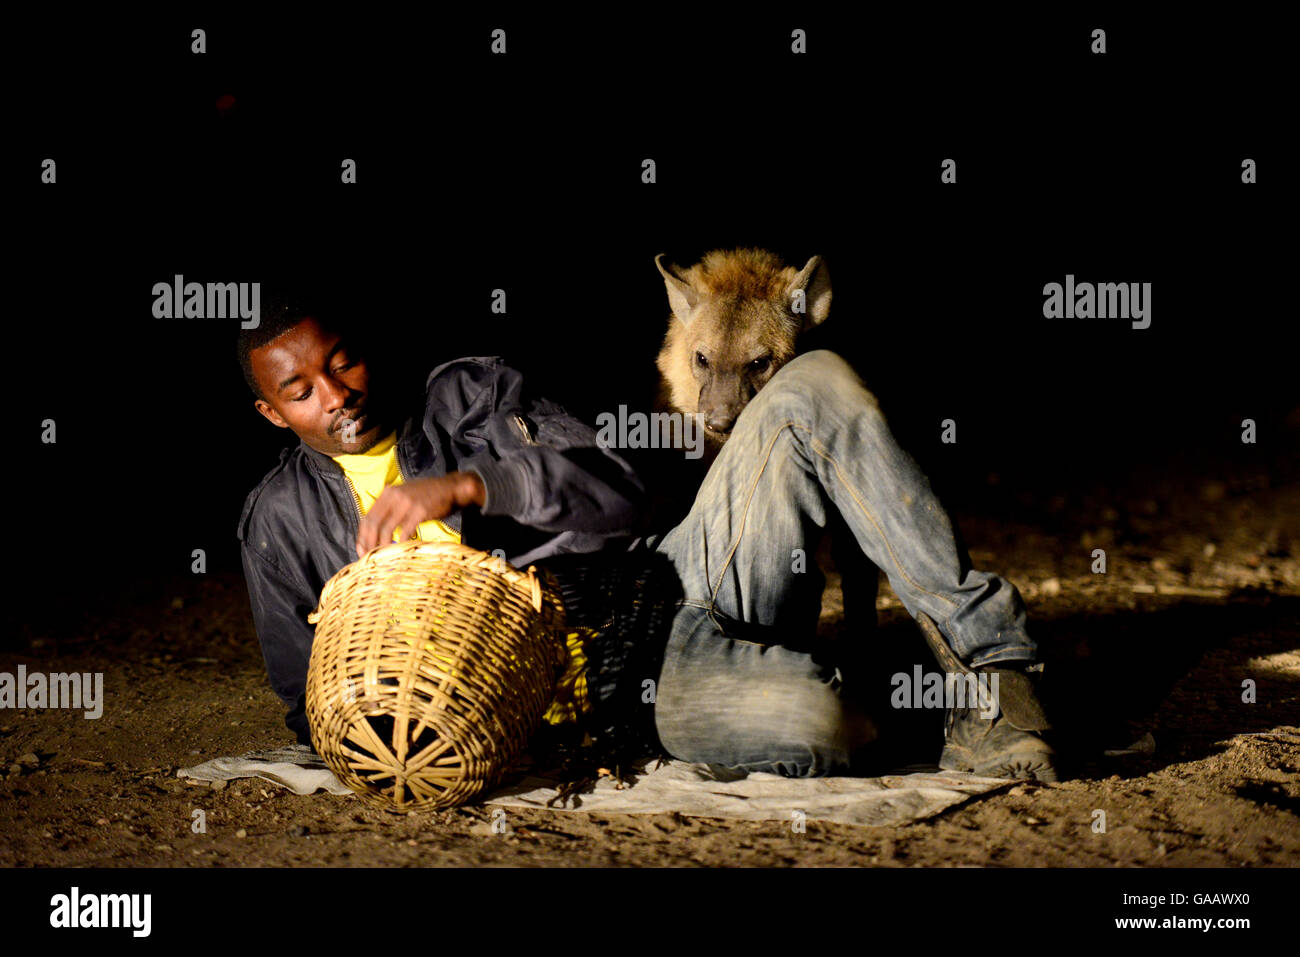 L'alimentation de l'homme des hyènes (Crocuta crocuta) dans la nuit dans la ville de Harar, cela a été une tradition pour plusieurs siècles, et est maintenant devenu un spectacle pour les touristes. L'Éthiopie, Novembre 2014 Banque D'Images